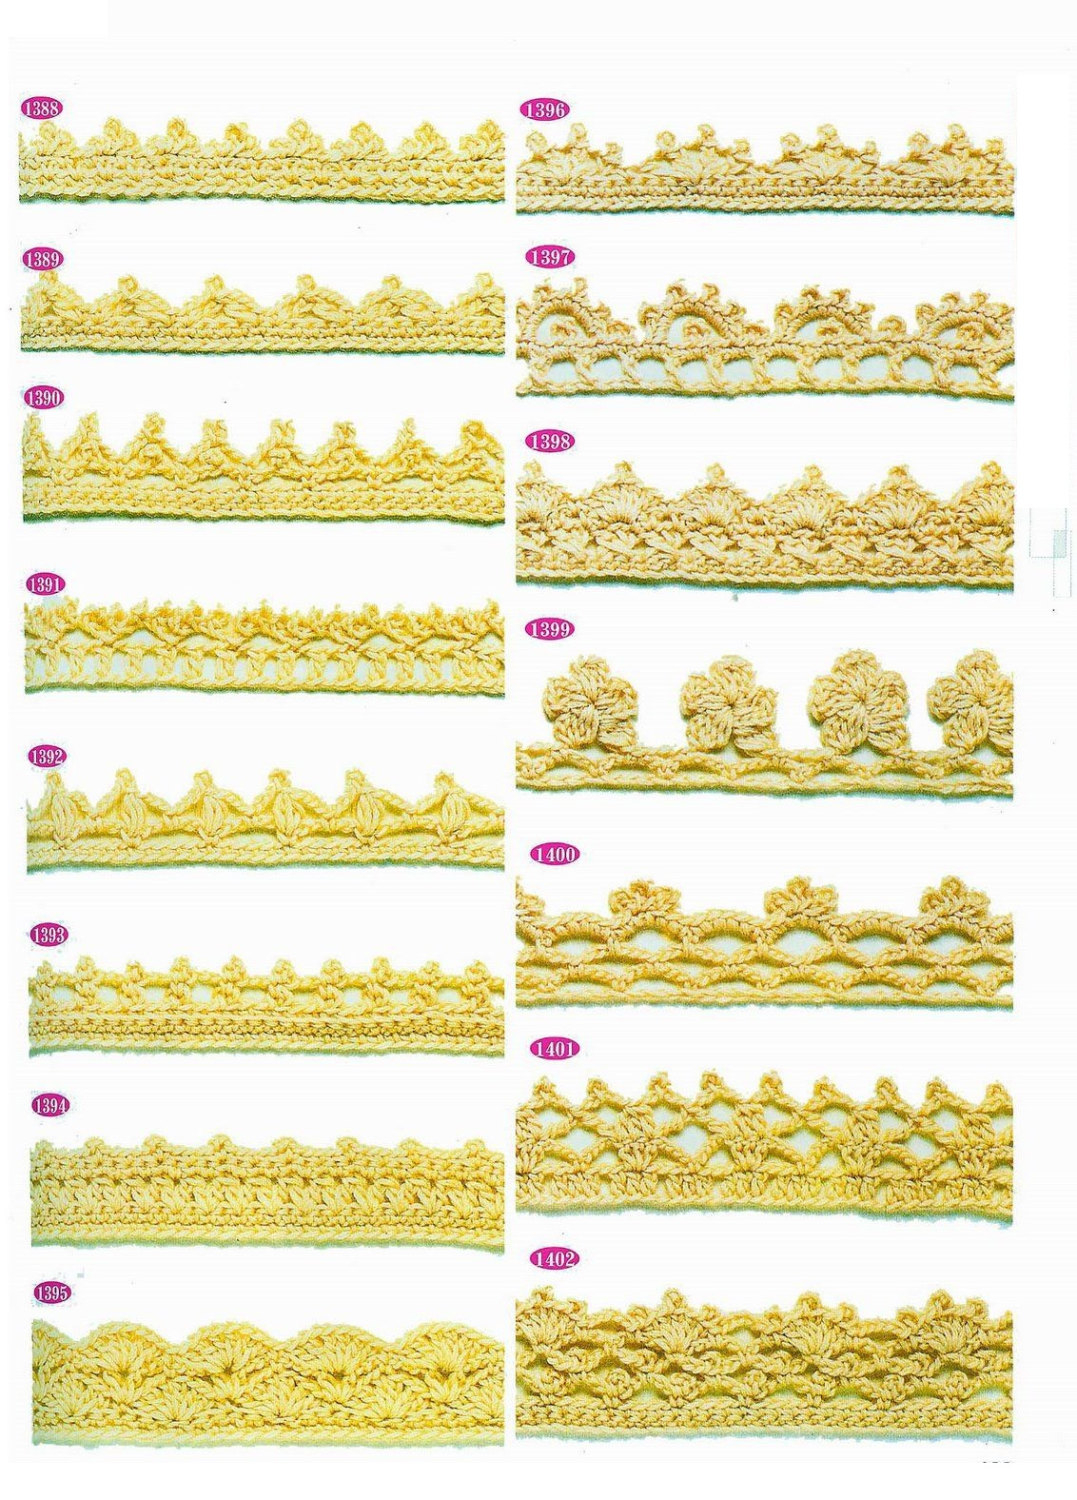 Crochet Trim Patterns Crochet Trim Patterns 15 Pieces Lace Edge Immediate Download Etsy